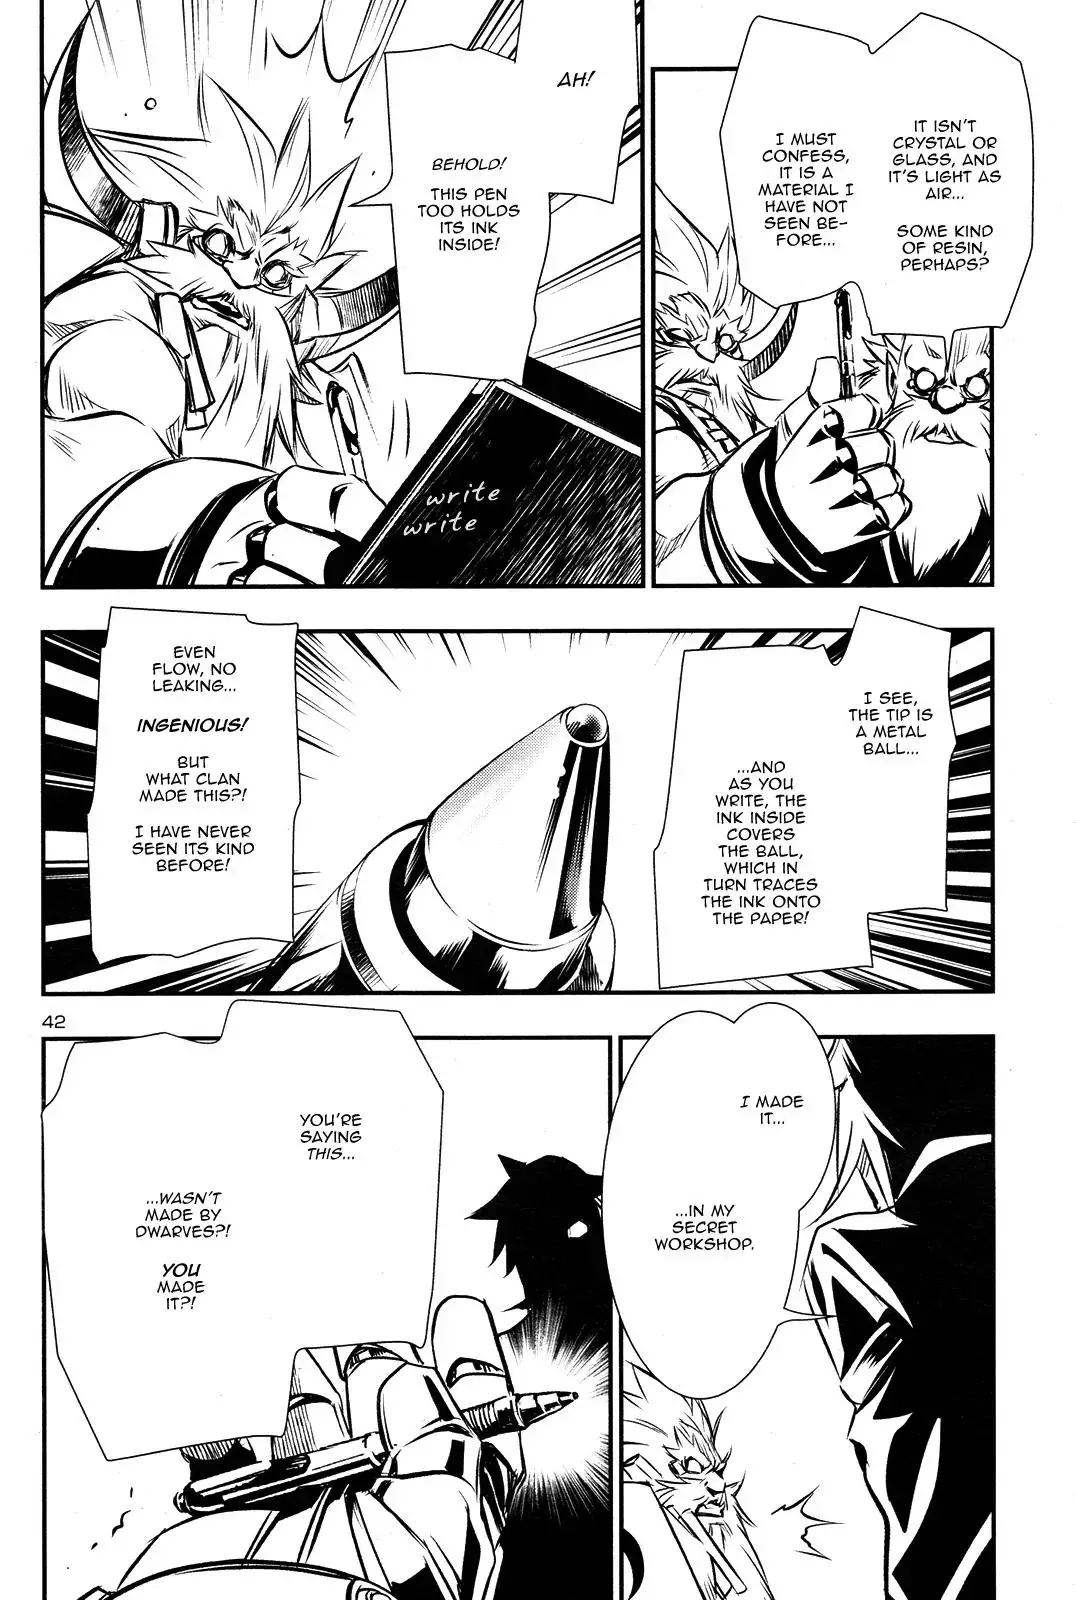 Shinju no Nectar - 9 page 40